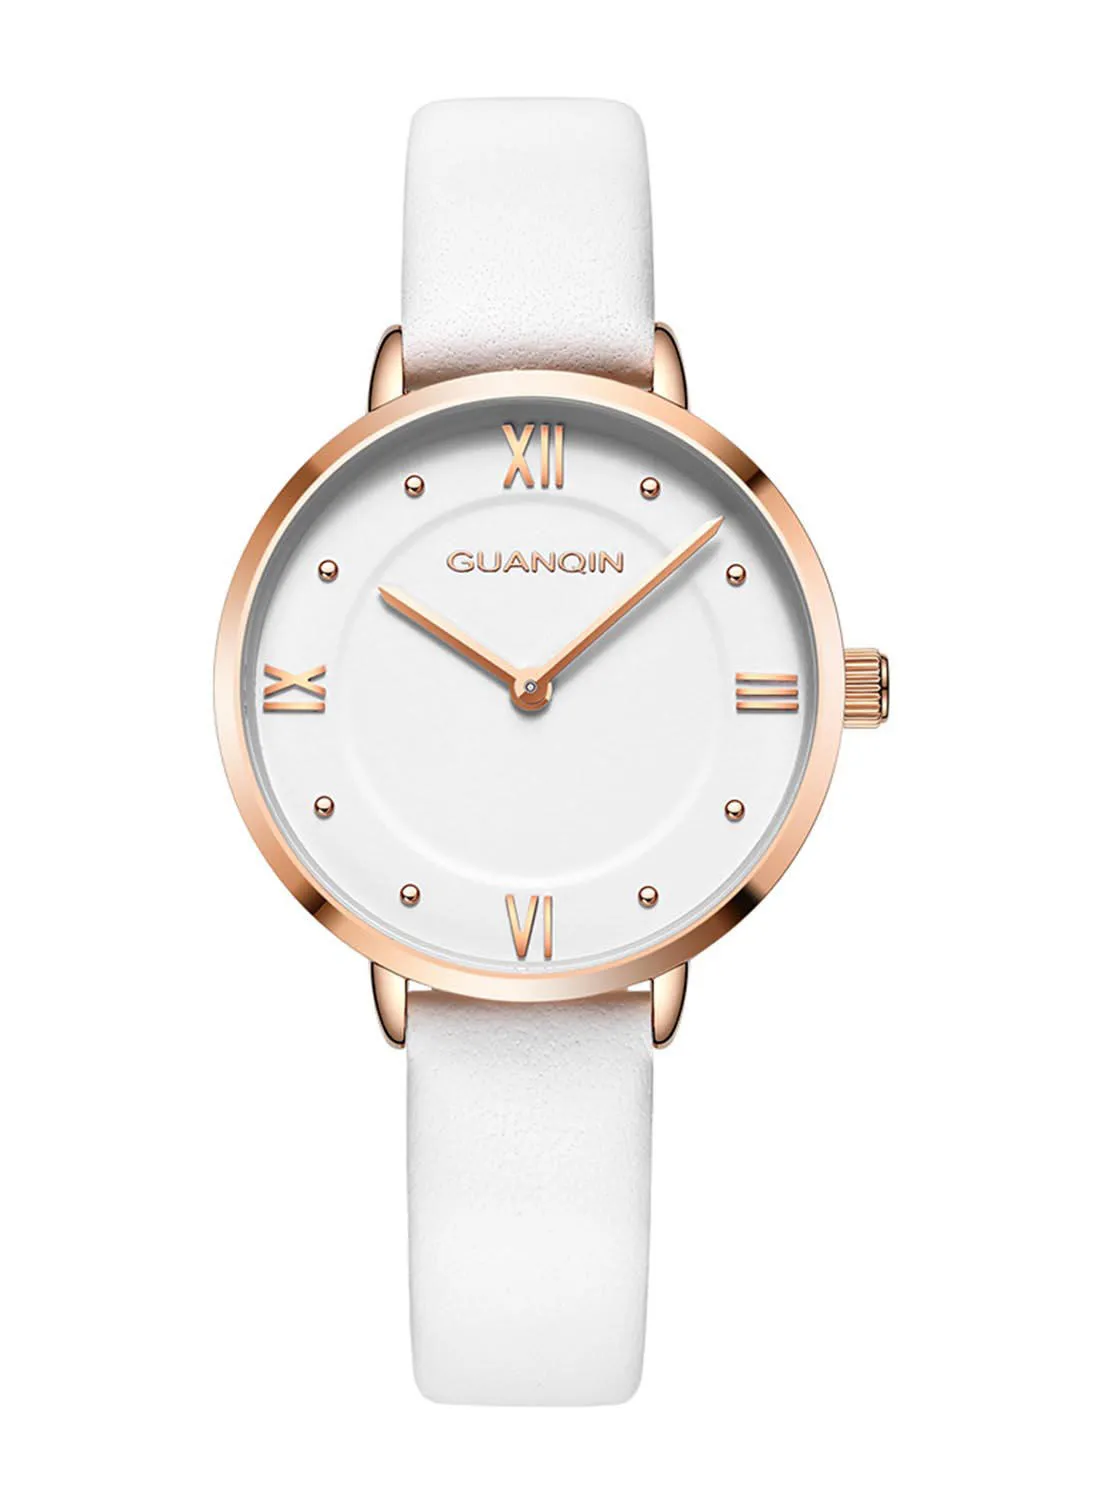 GUANQIN ساعة يد كرونوغراف كوارتز متعددة الوظائف للرجال GS1911008